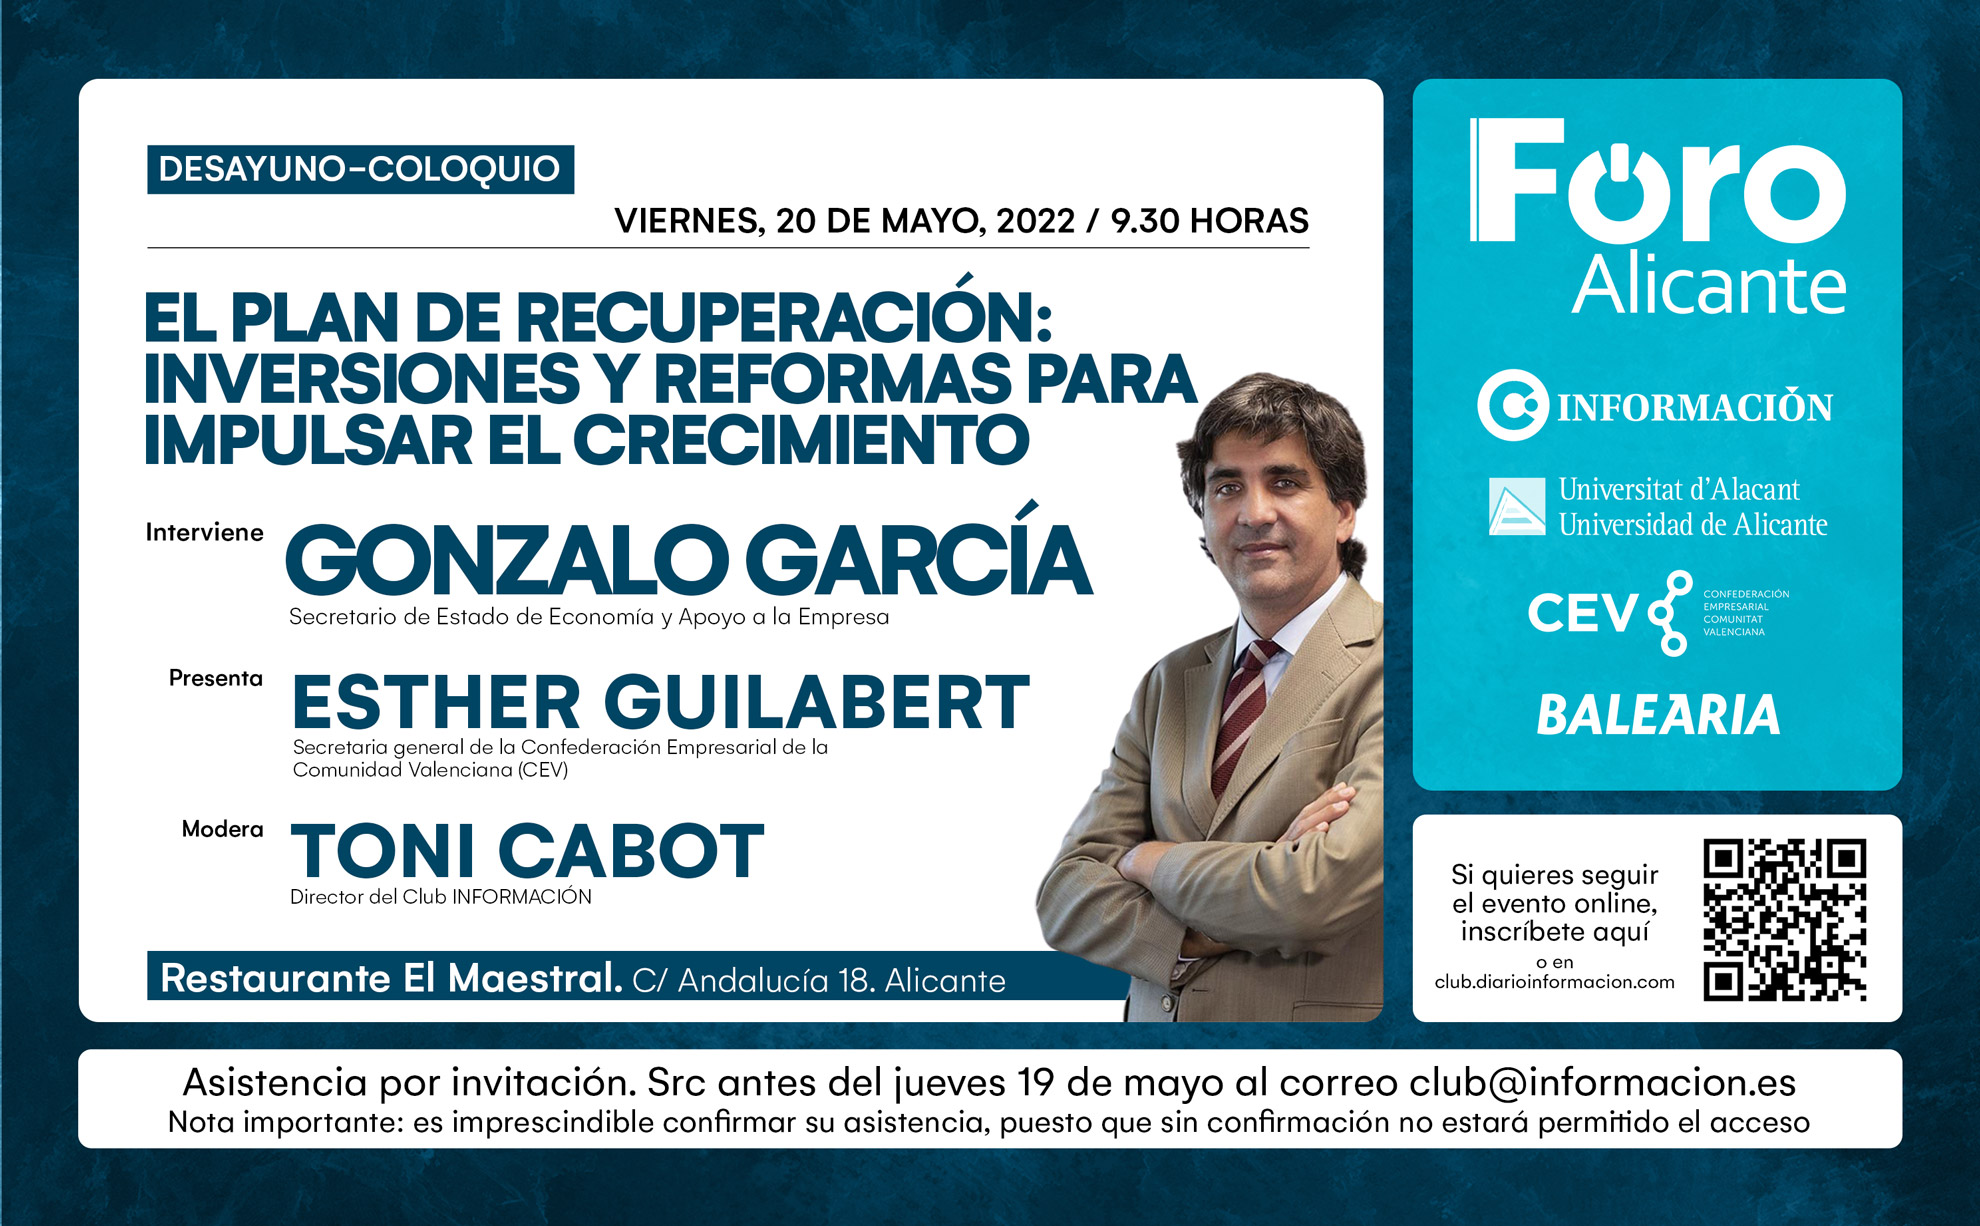 FORO ALICANTE con GONZALO GARCÍA. “El plan de recuperación: inversiones y reformas para impulsar el crecimiento”